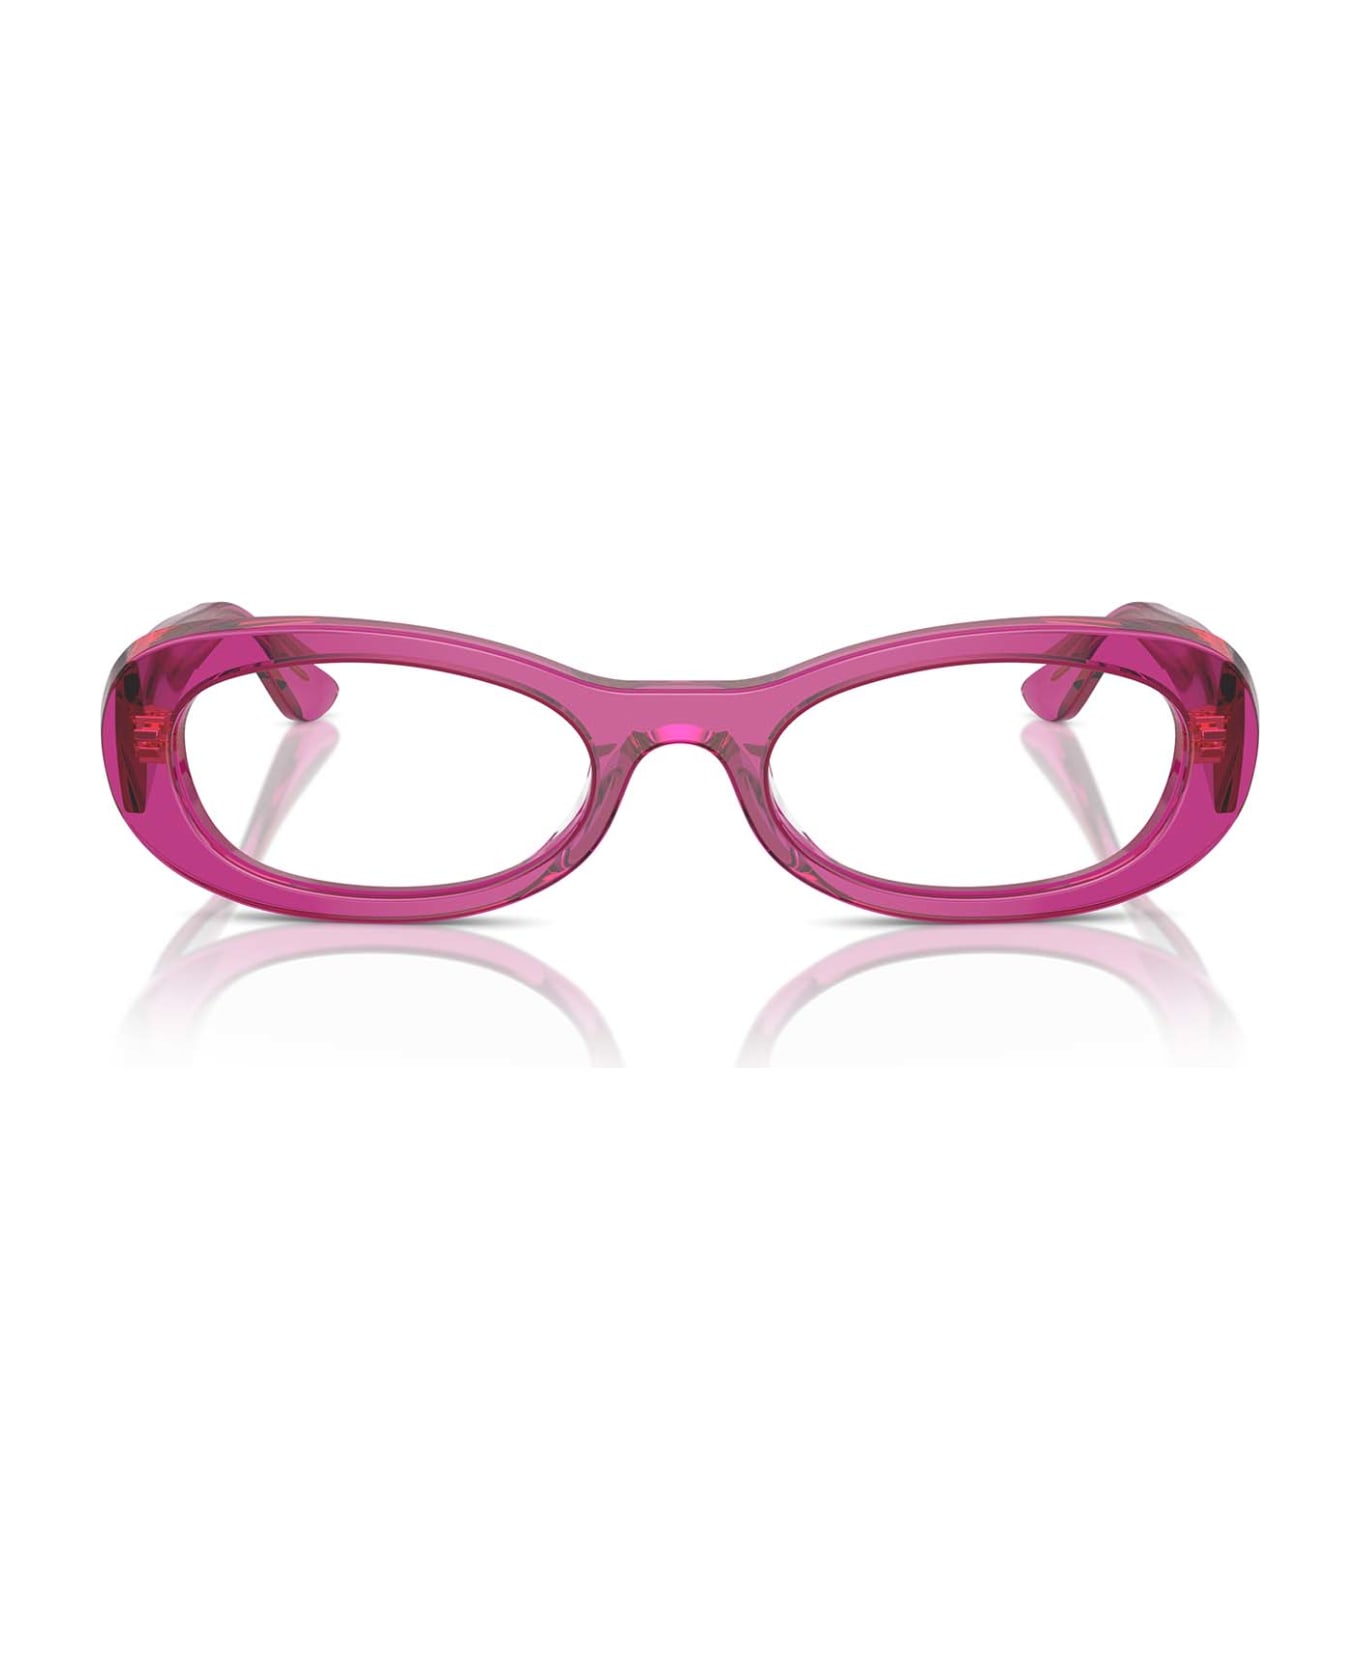 Vogue Eyewear Vo5596 Transparent Violet Glasses - Transparent Violet